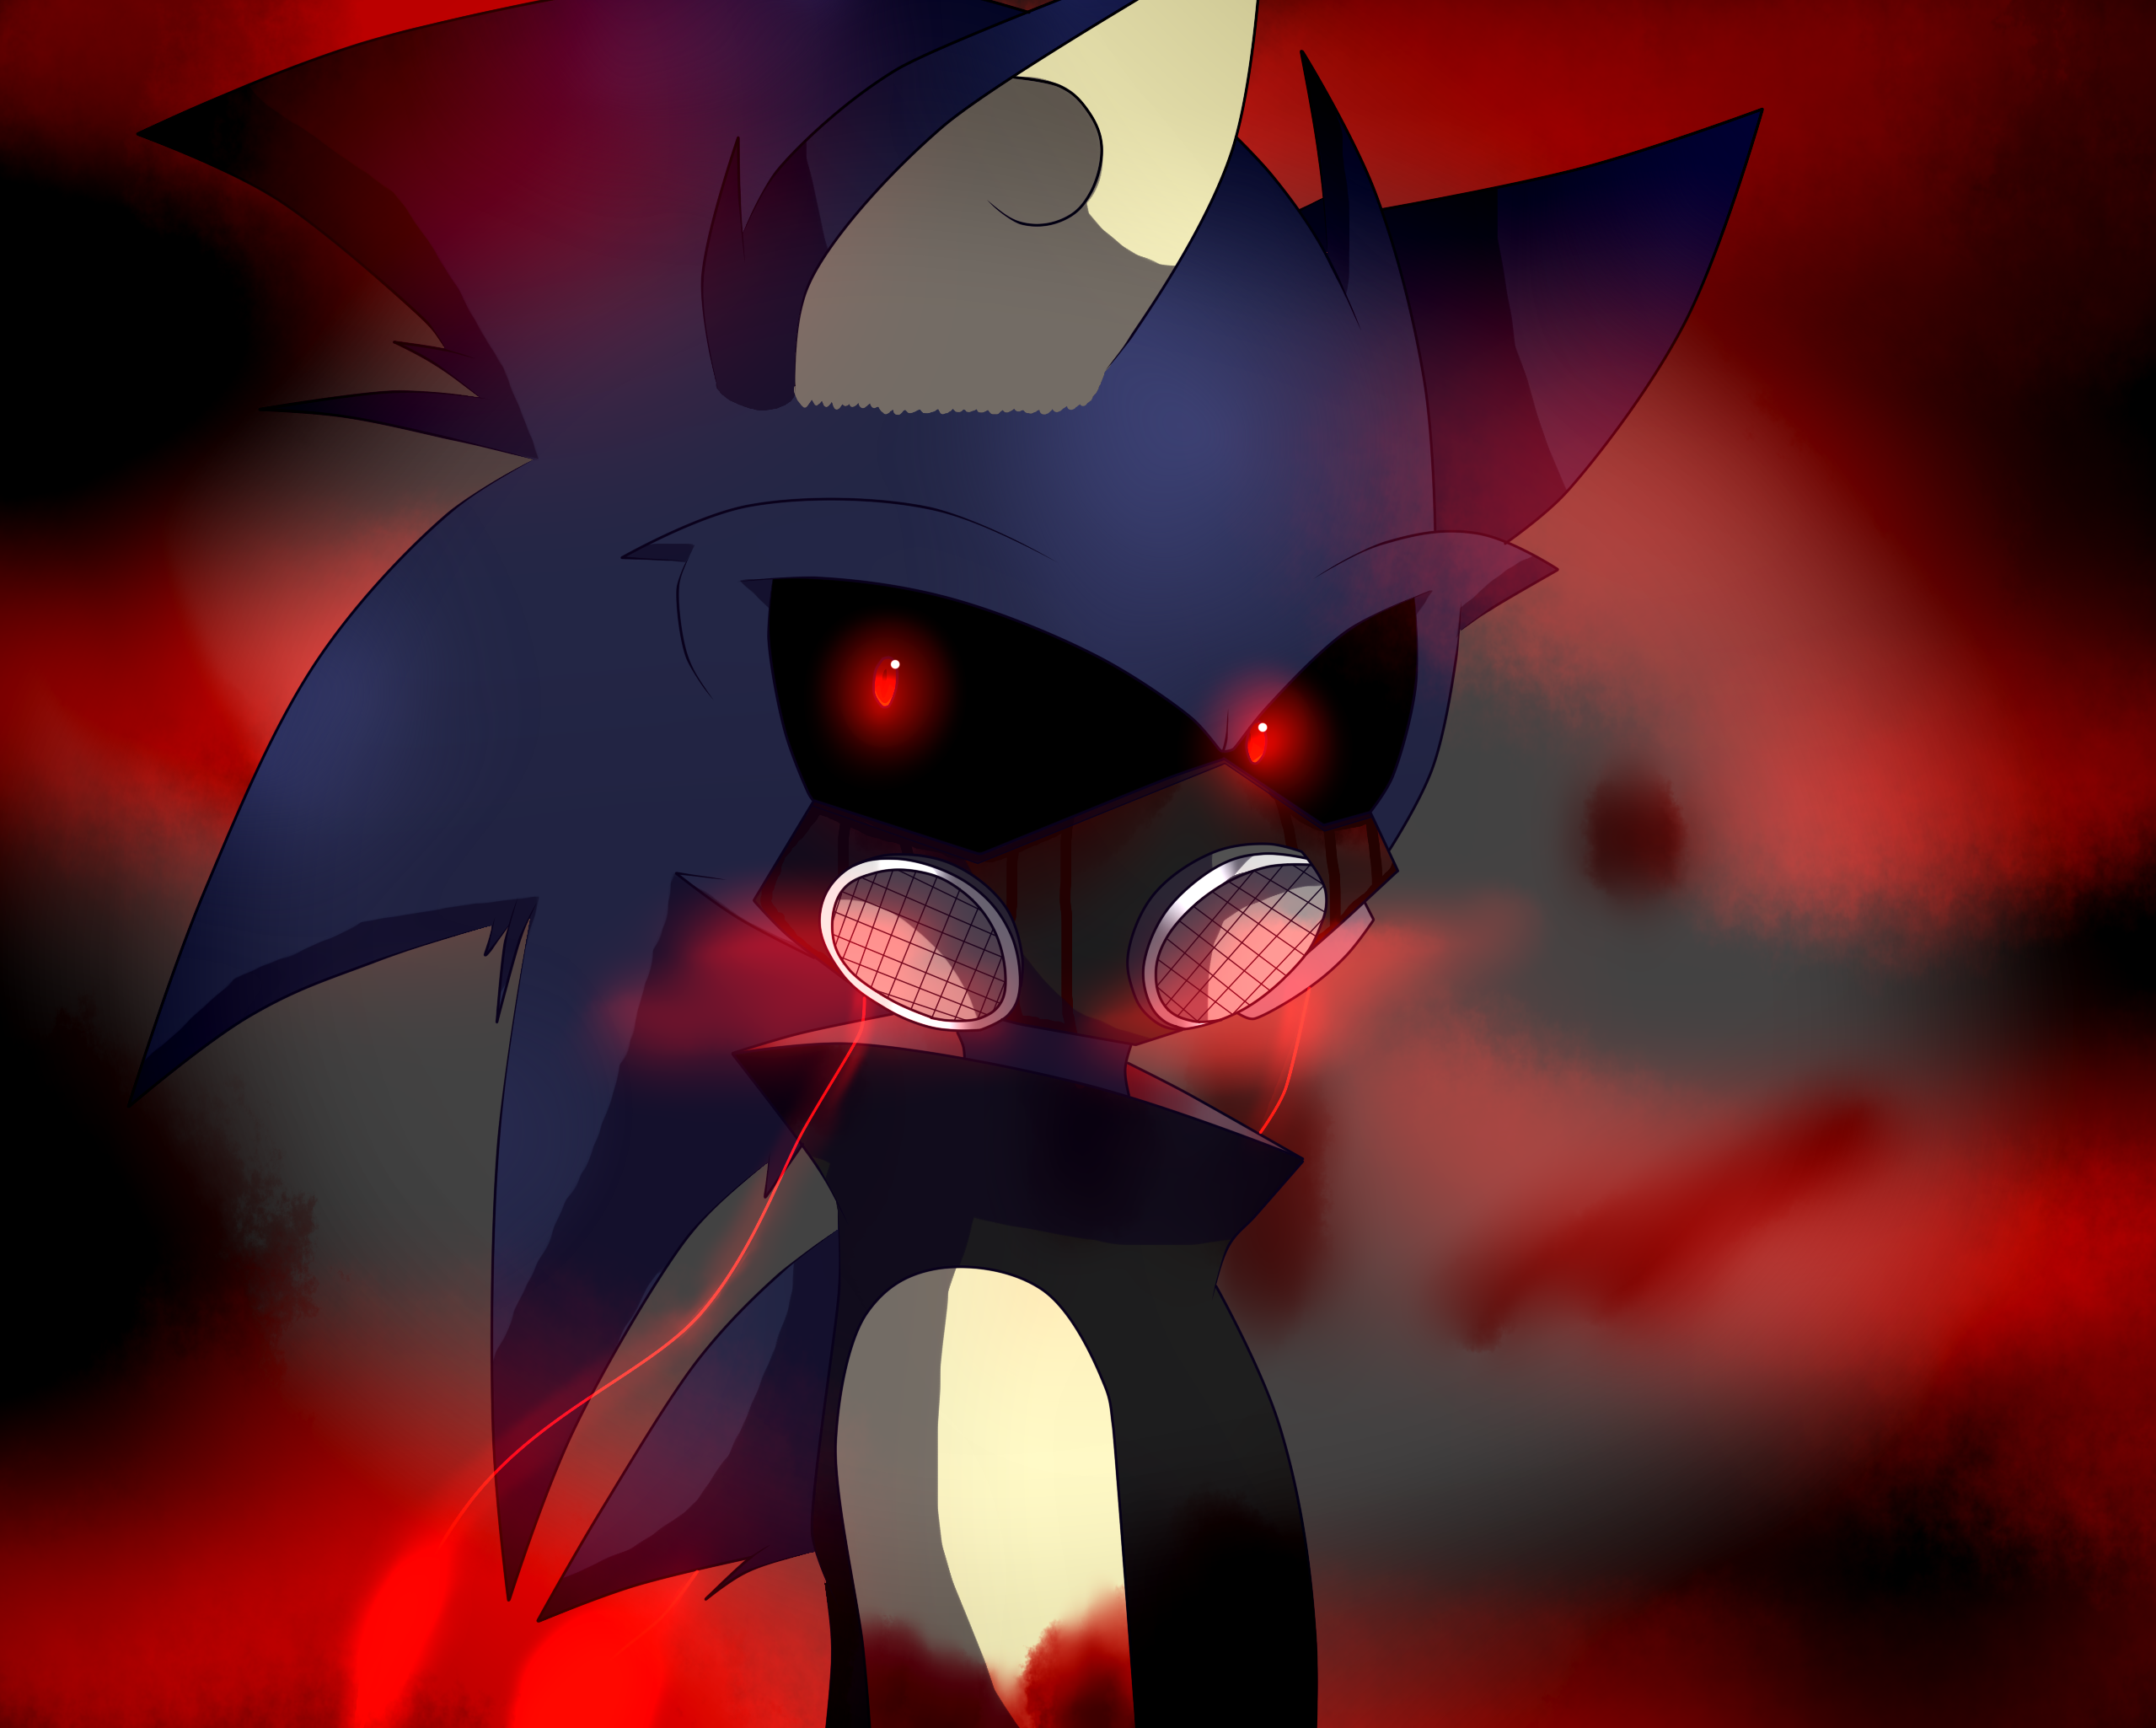 Dark Sonic.Exe by SmashingRewind2021 on DeviantArt